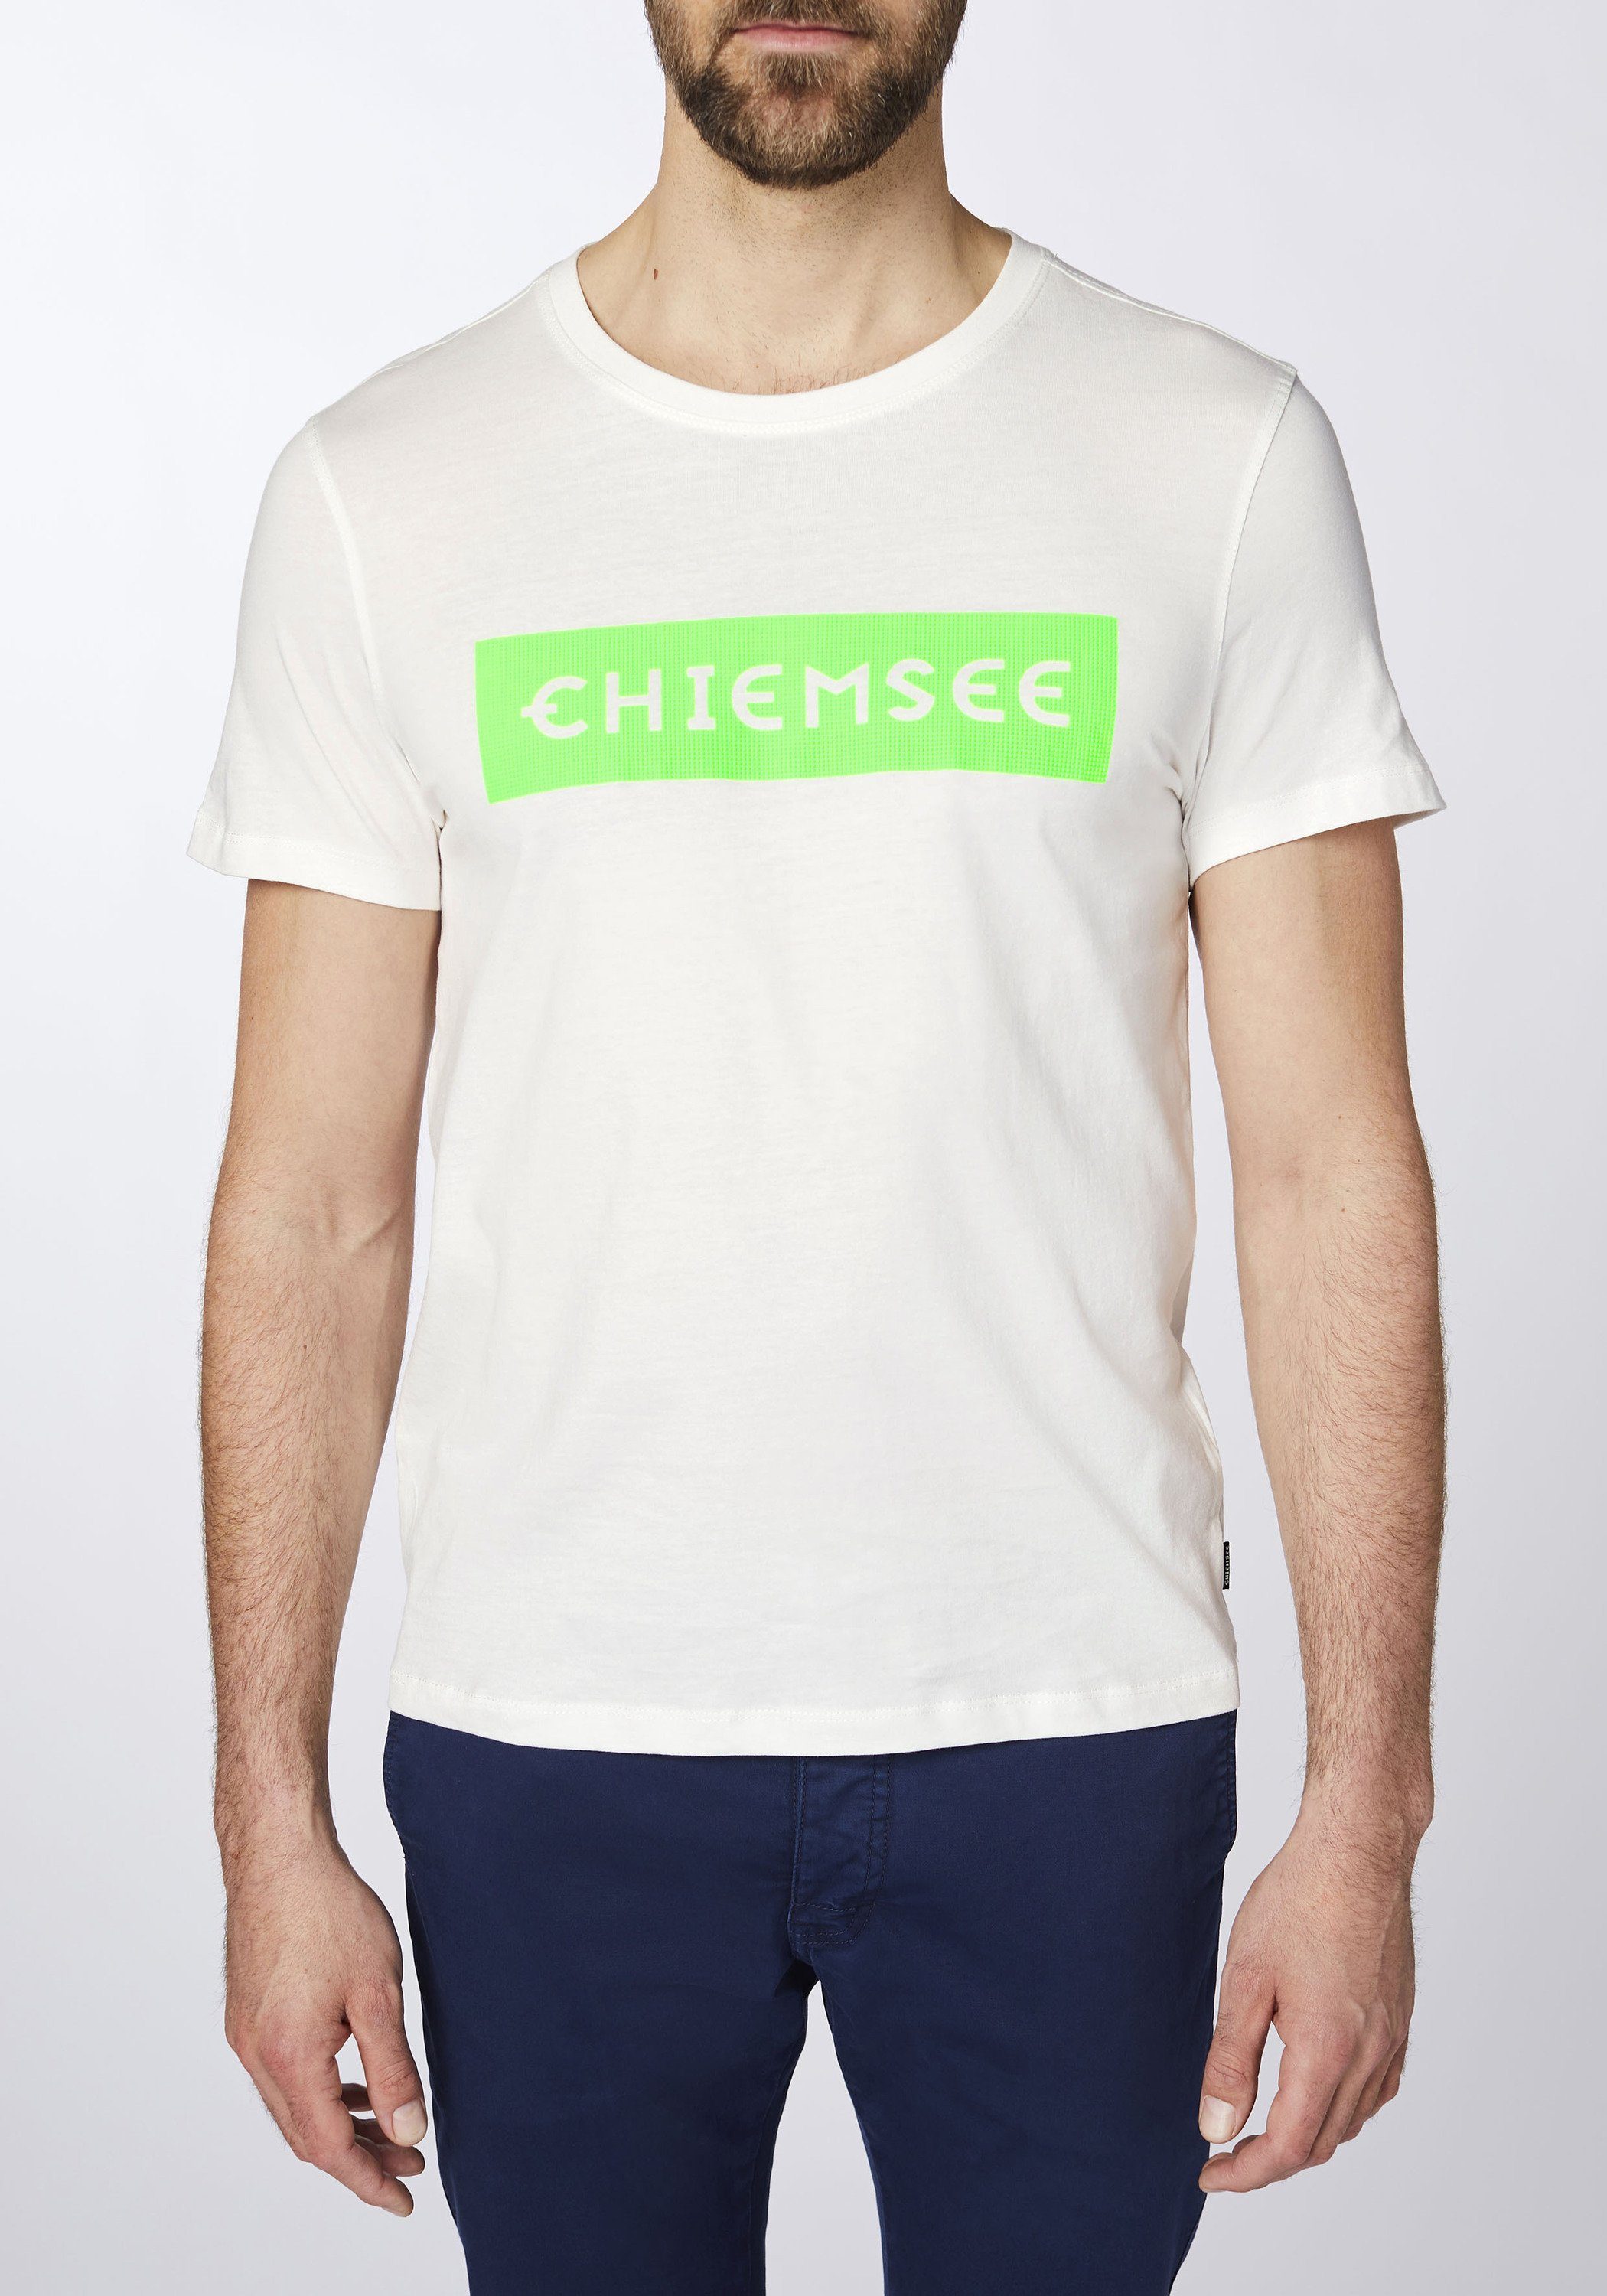 mit Dif Chiemsee 1 plakativem Grn T-Shirt Wht/Md Print-Shirt Markenschriftzug